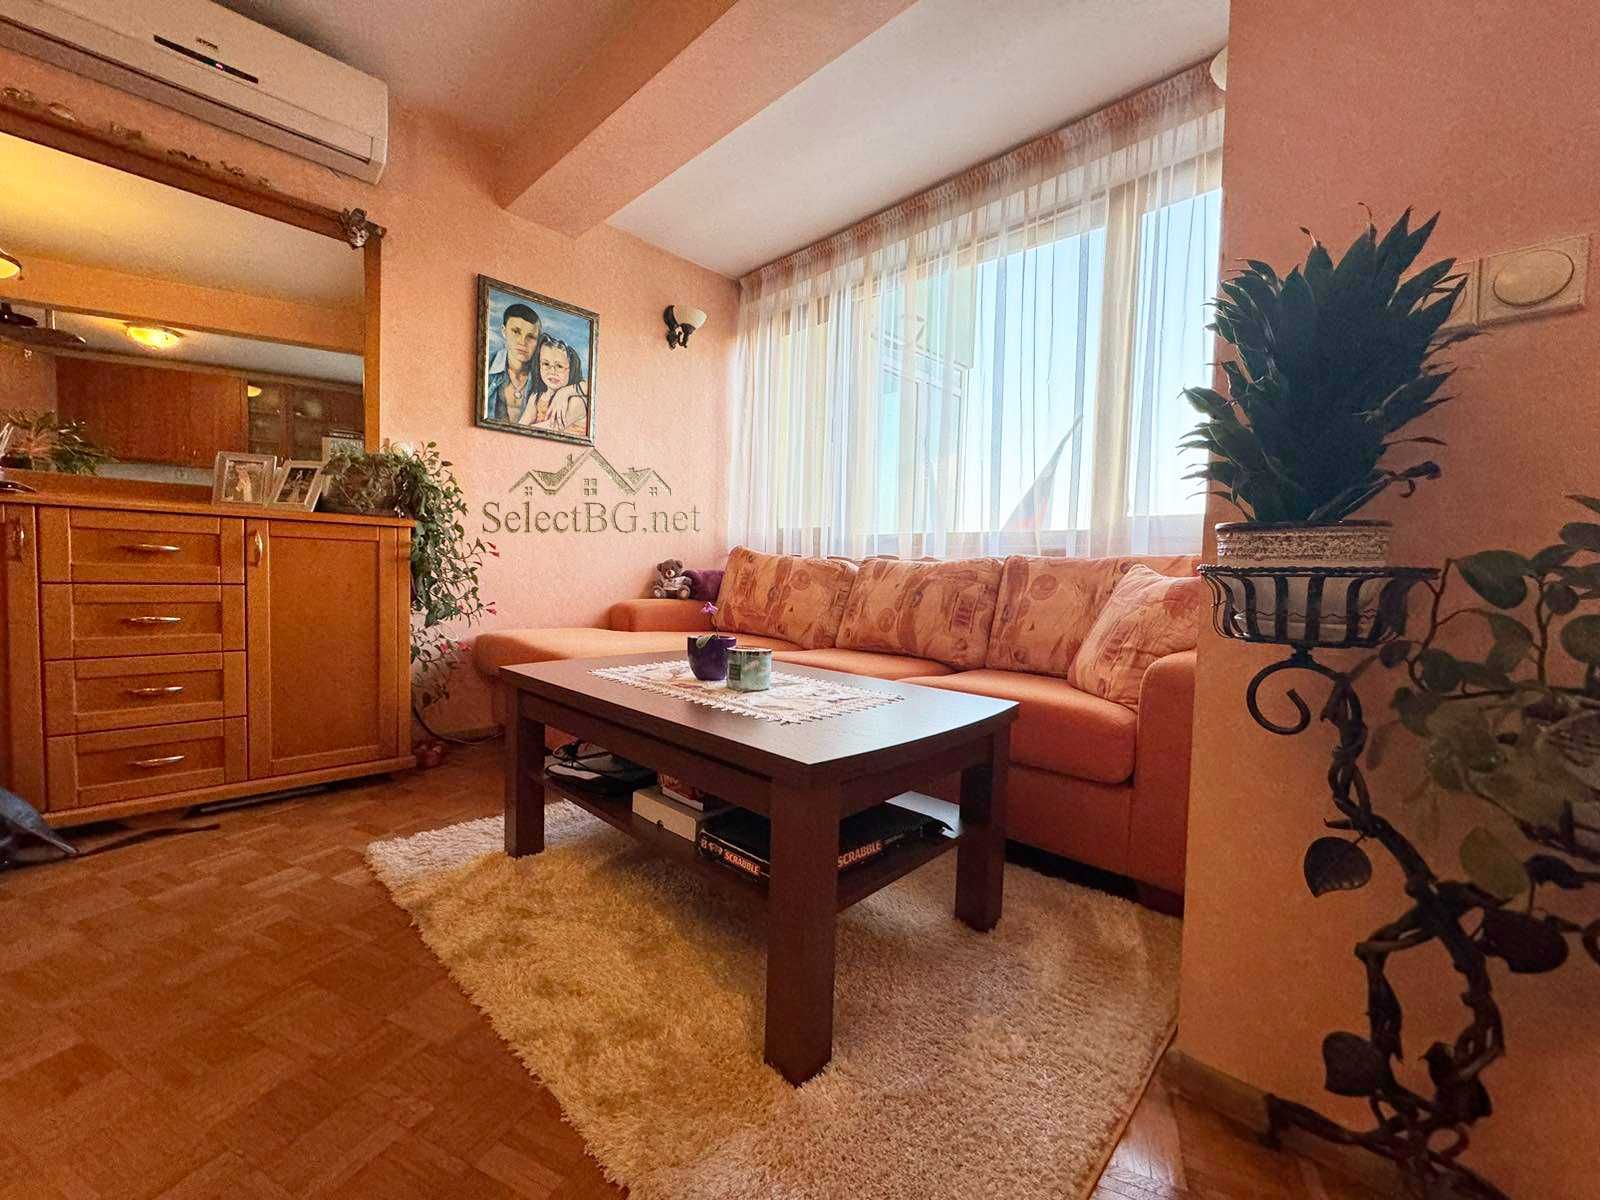 Тристаен апартамент в центъра на Велико Търново с гледка към Царевец